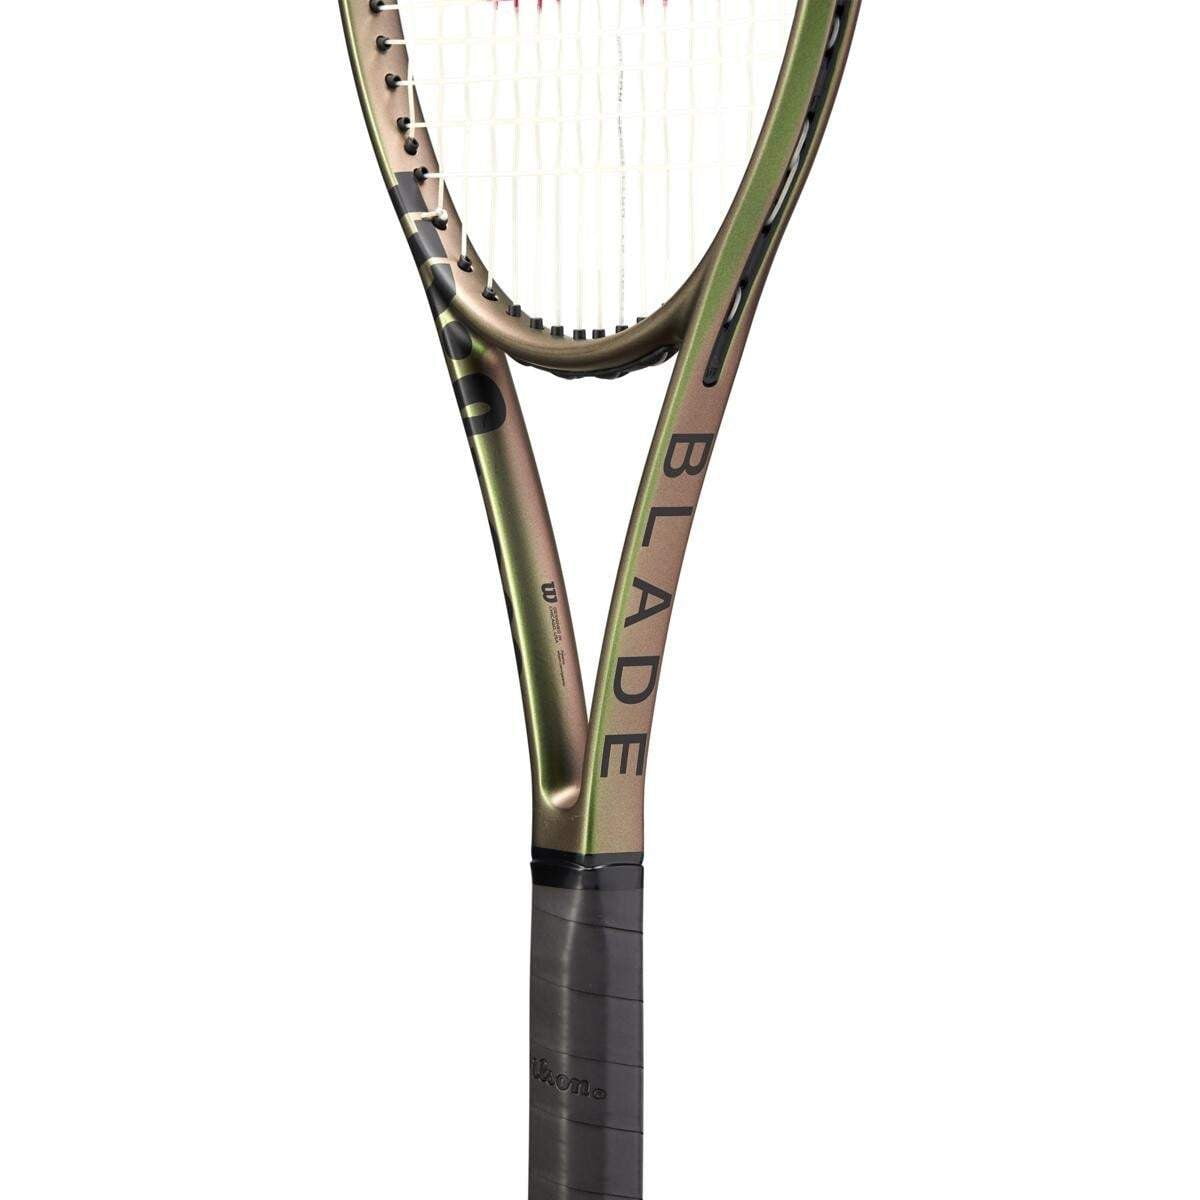 Wilson Blade 98 16x19 V8 Tennis Racquet 2021 - Tennis Racquet - Wilson - ATR Sports